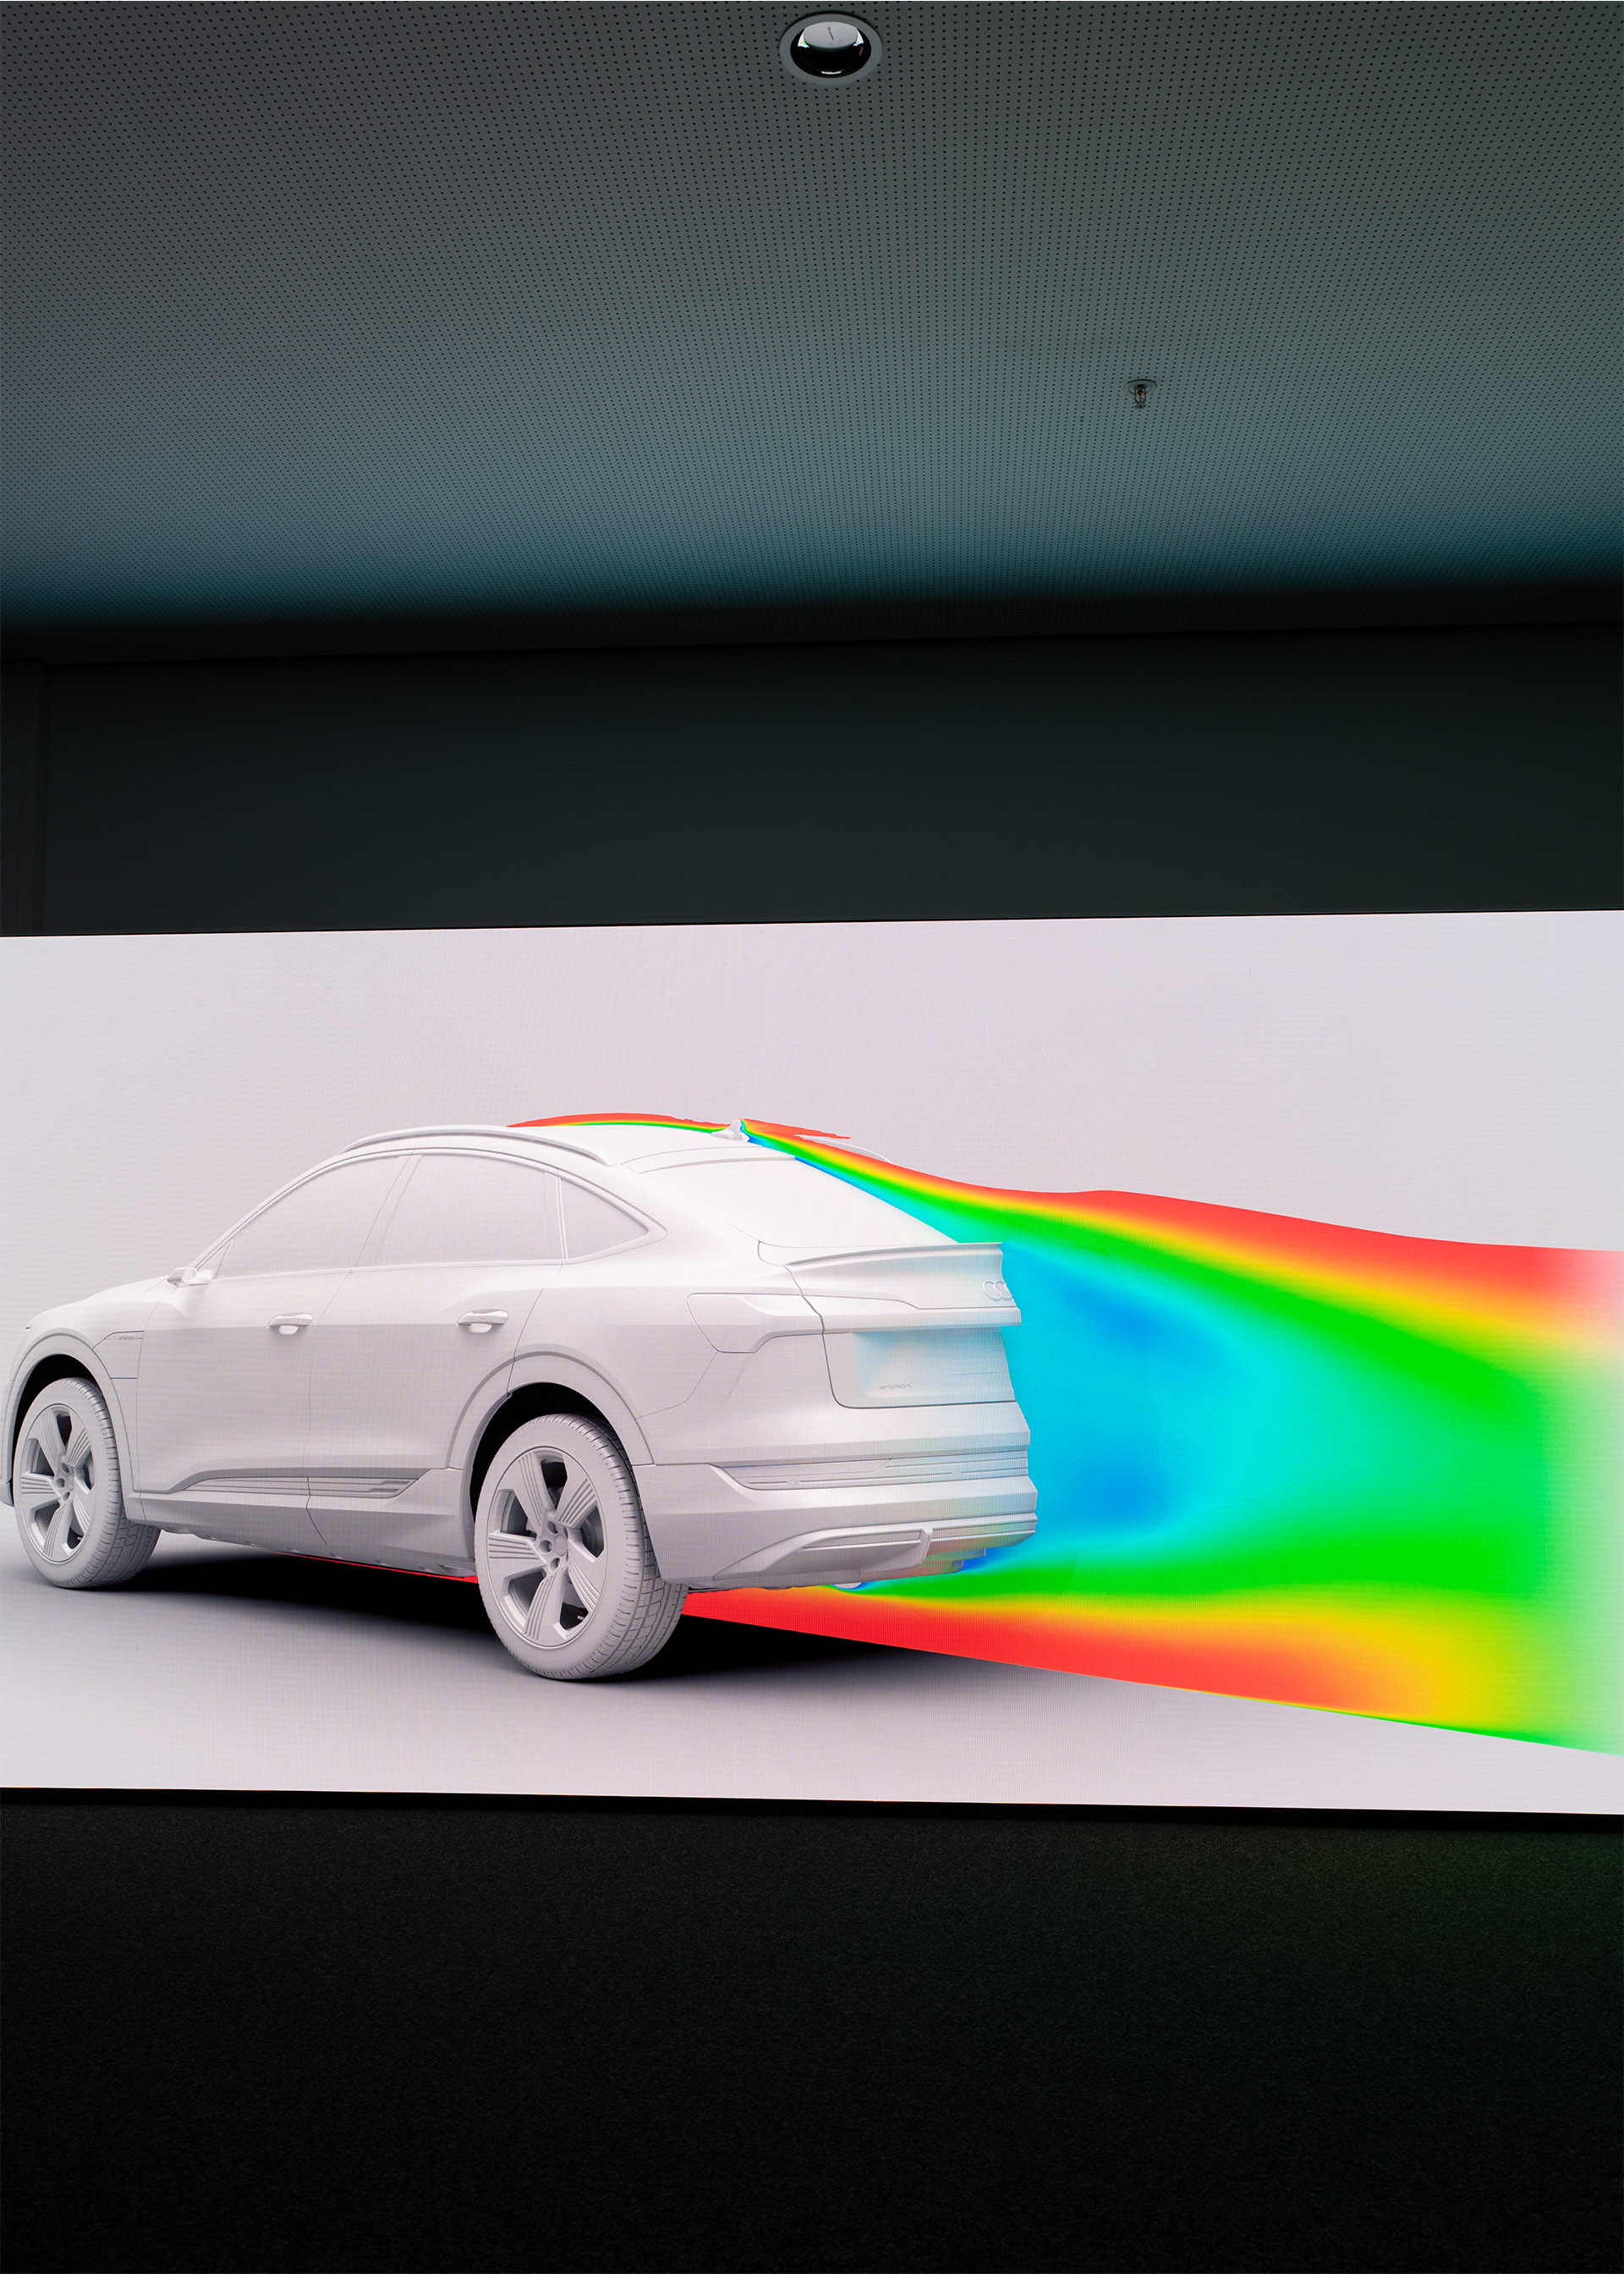 Fargene markerer luftstrømmene bak bilen.